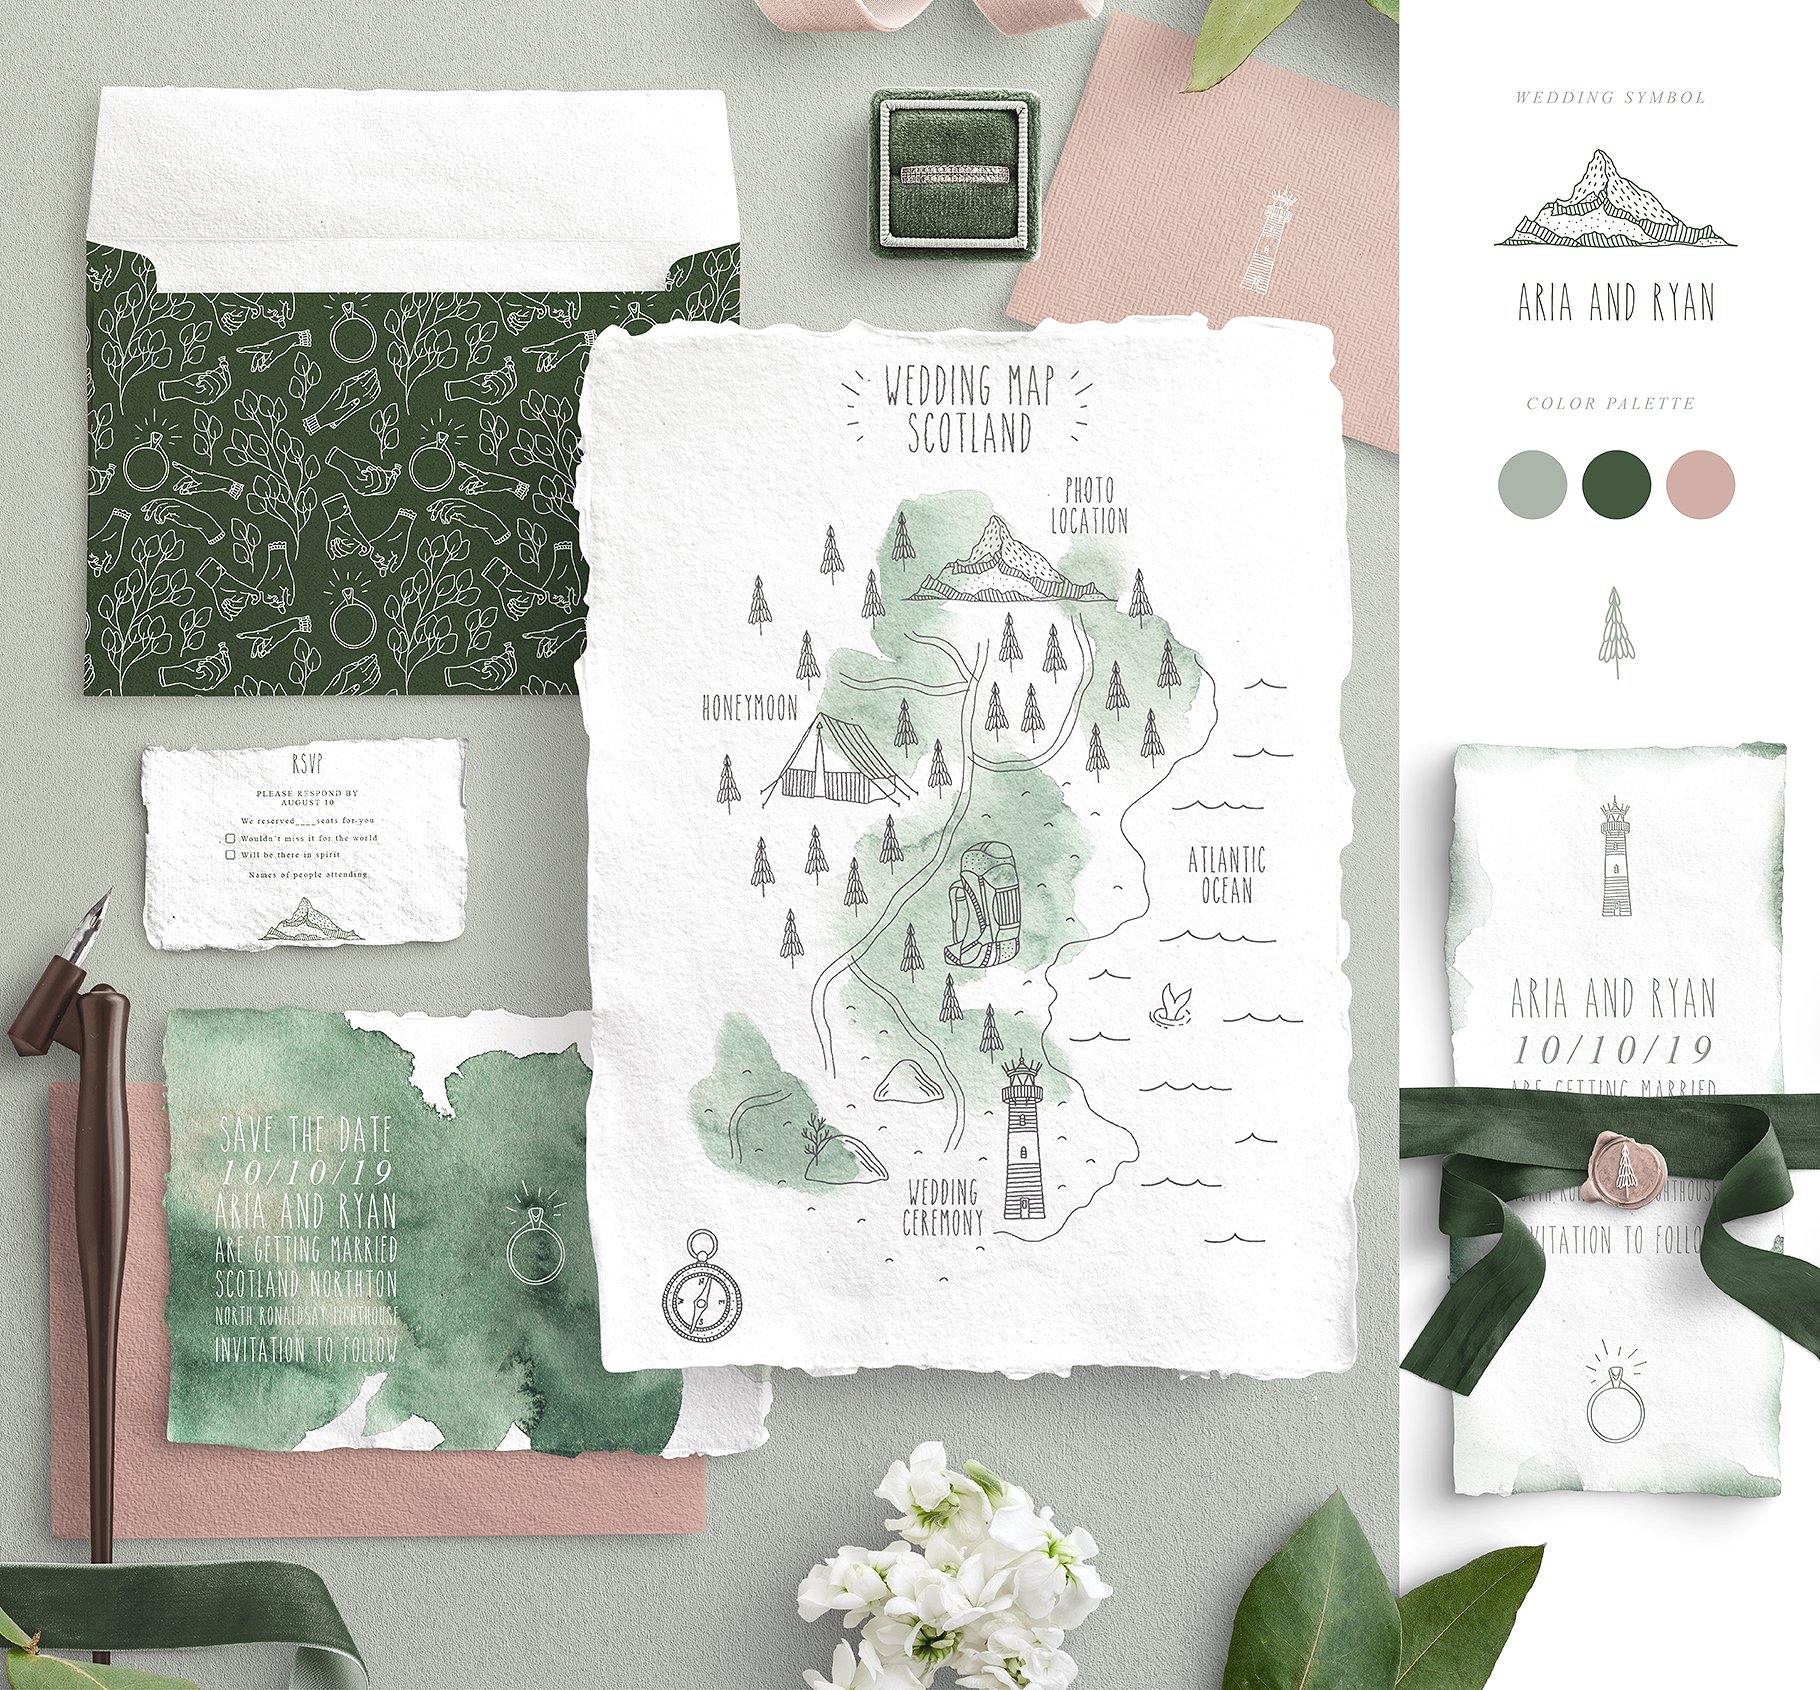 创意文艺风格婚礼邀请函地图设计素材包 Wedding Map Creator Collection插图4